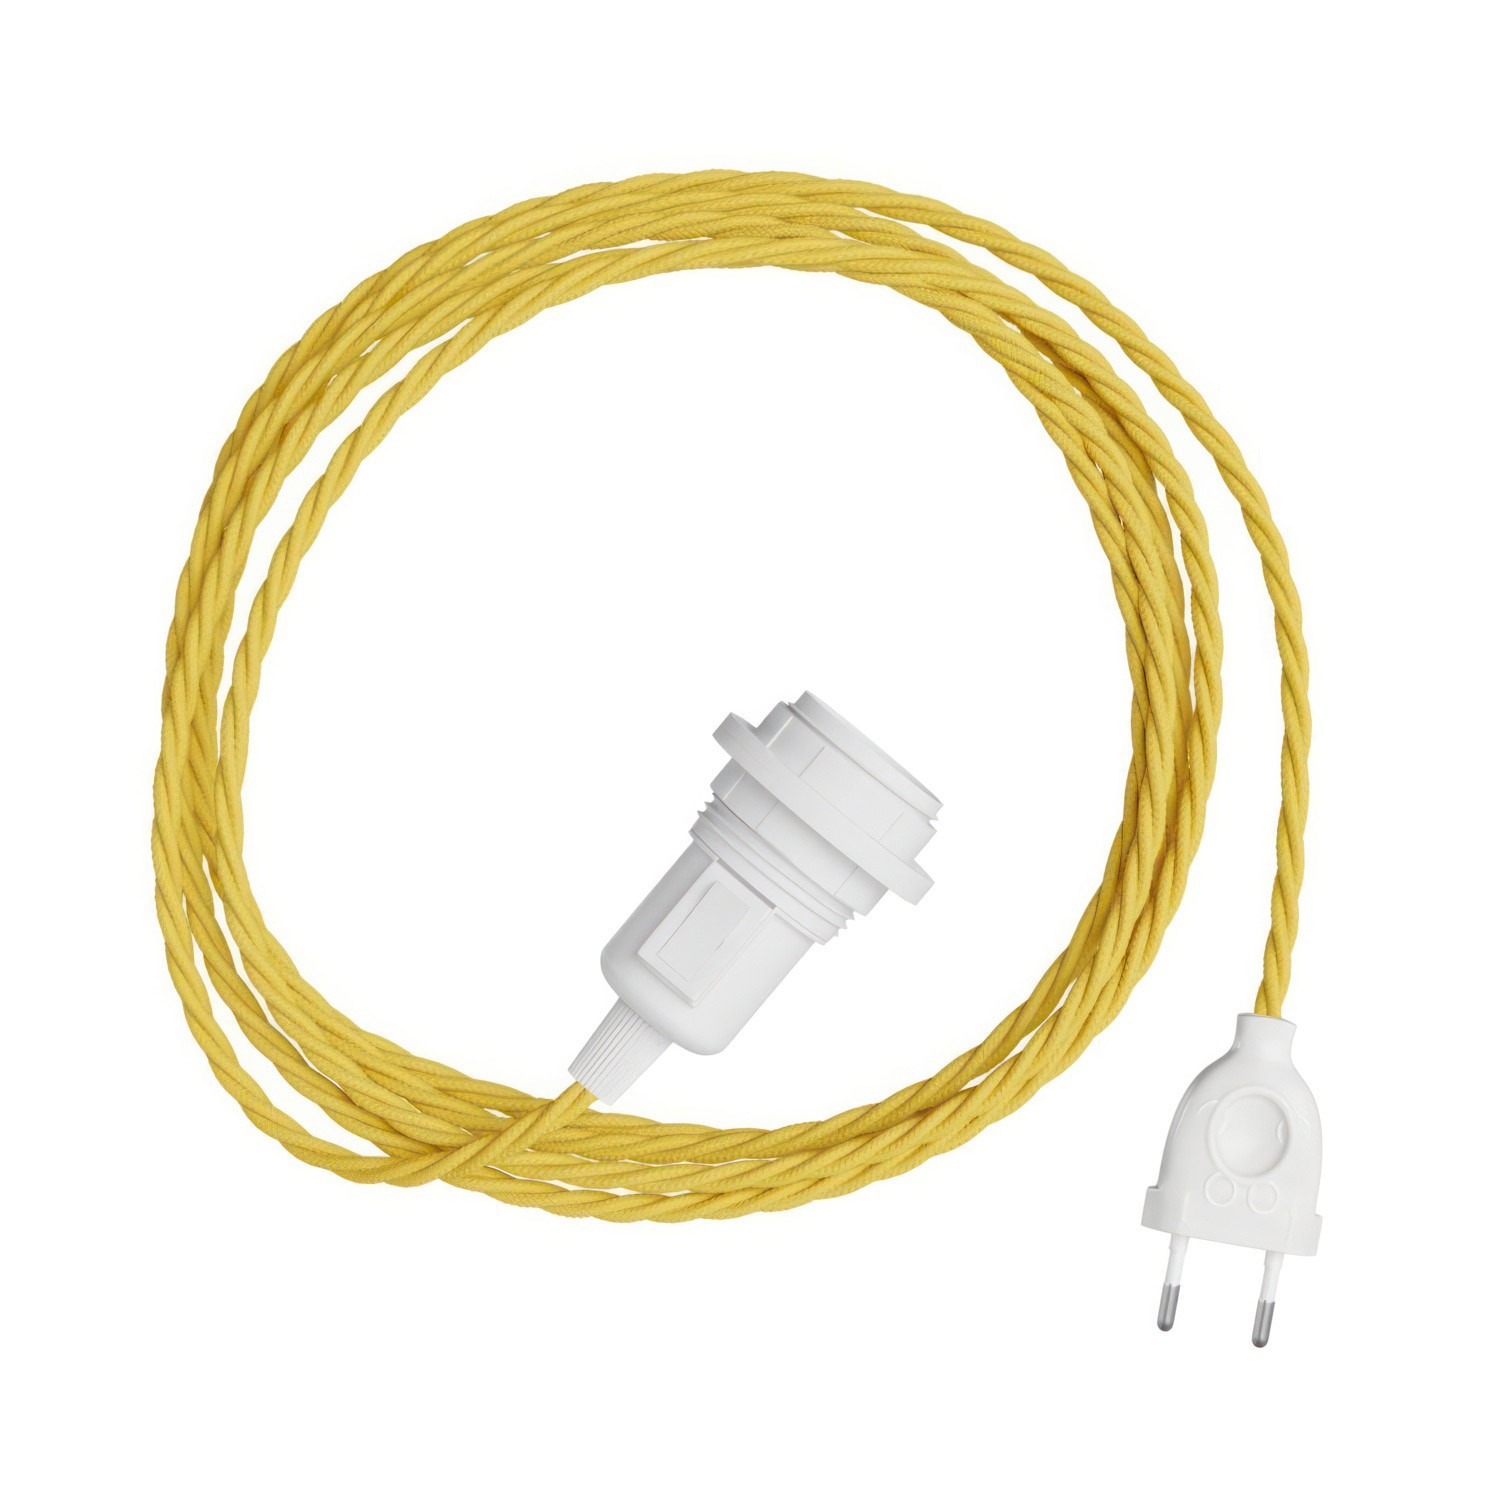 Snake Twisted poiur abat-jour -Lampe plug-in avec câble textile tressé